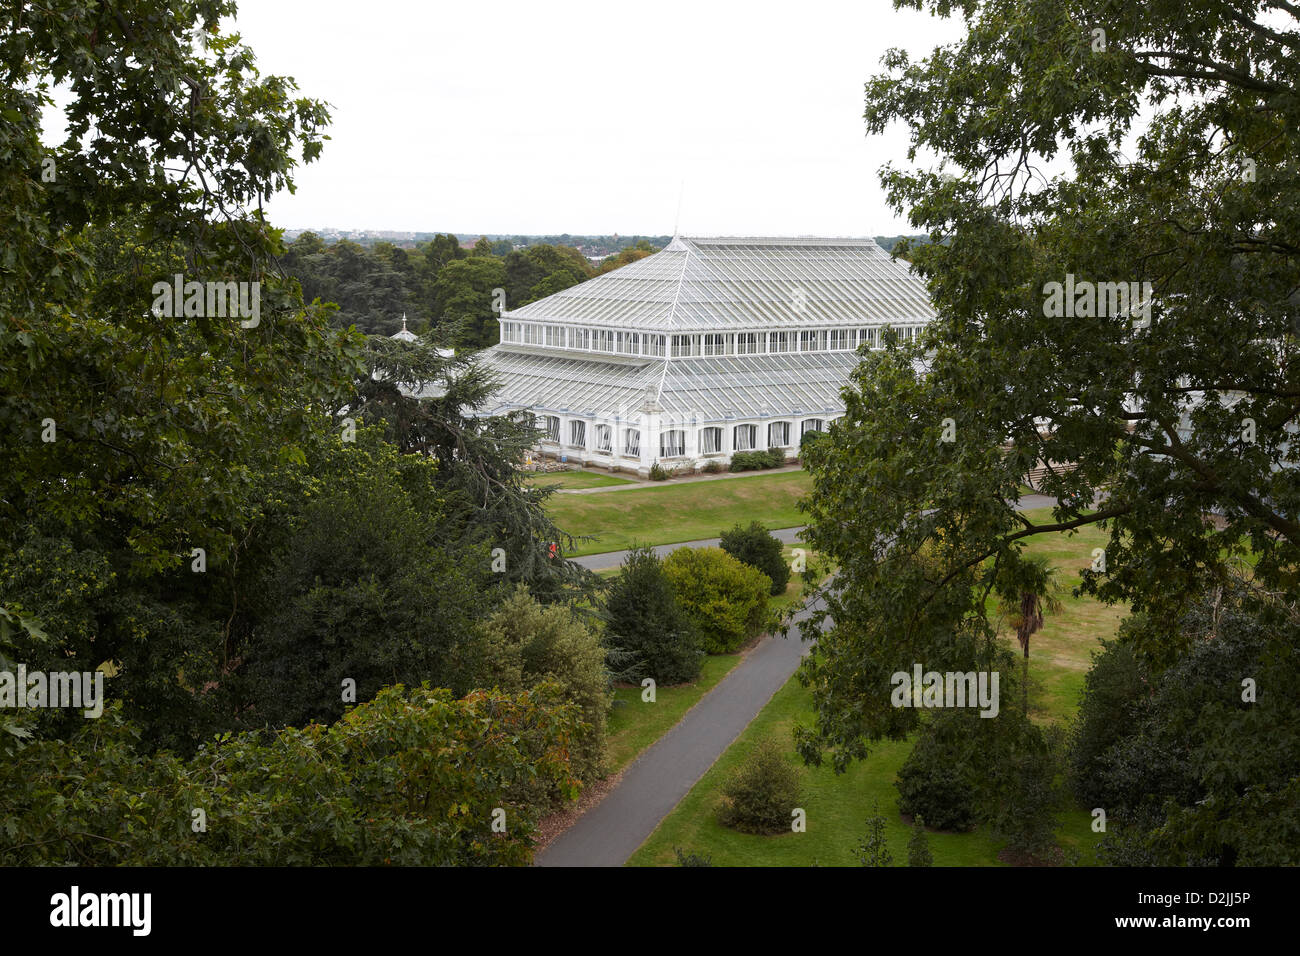 L'Europe, maison vue du rhizotron et Xstrata treetop walkway, Kew Gardens, London, UK Banque D'Images